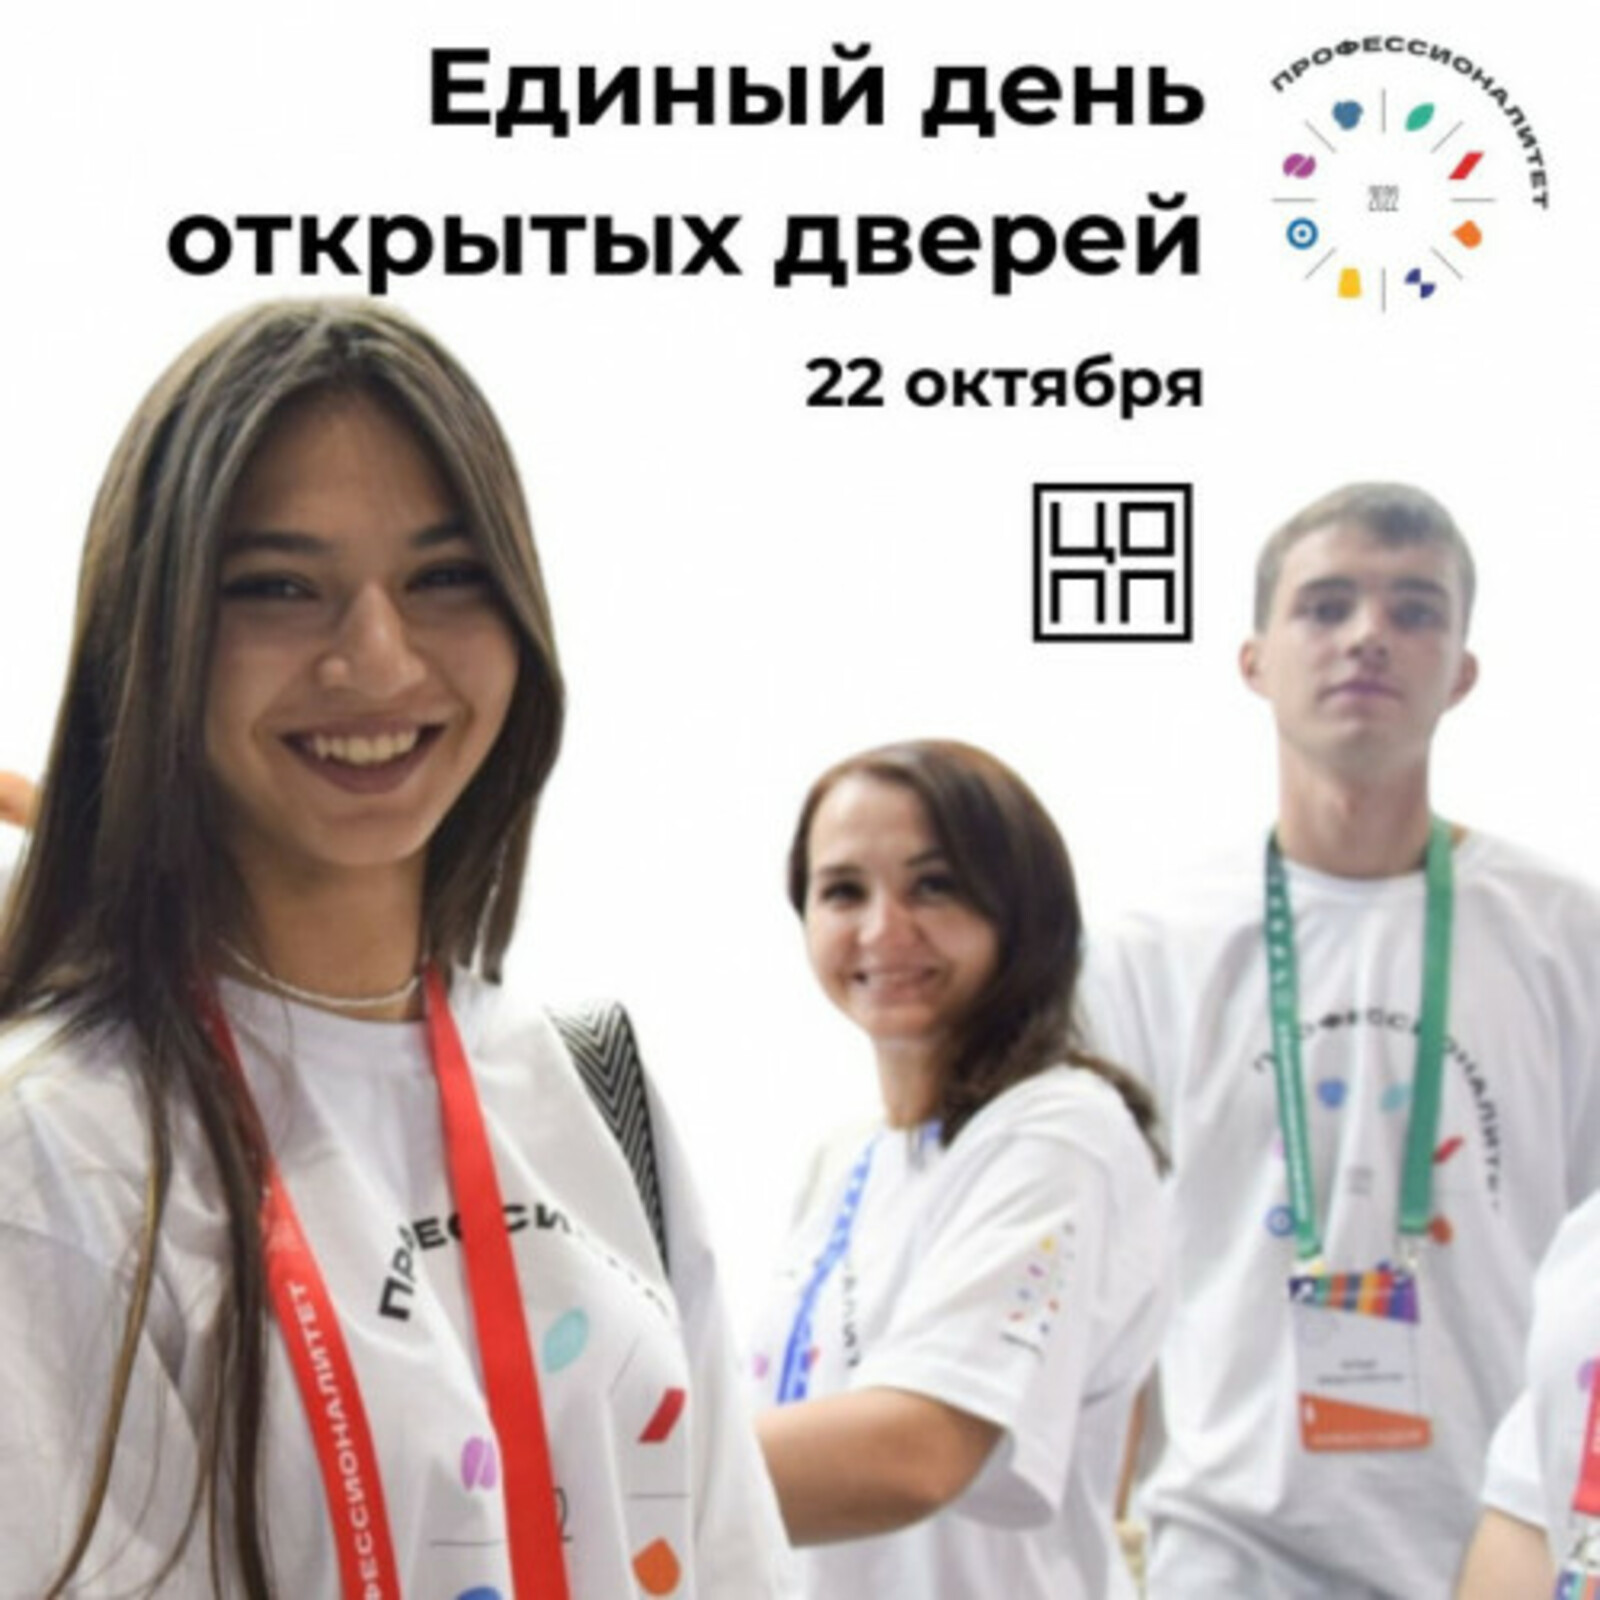 В Башкортостане пройдёт Единый день открытых дверей в рамках проекта «Профессионалитет»